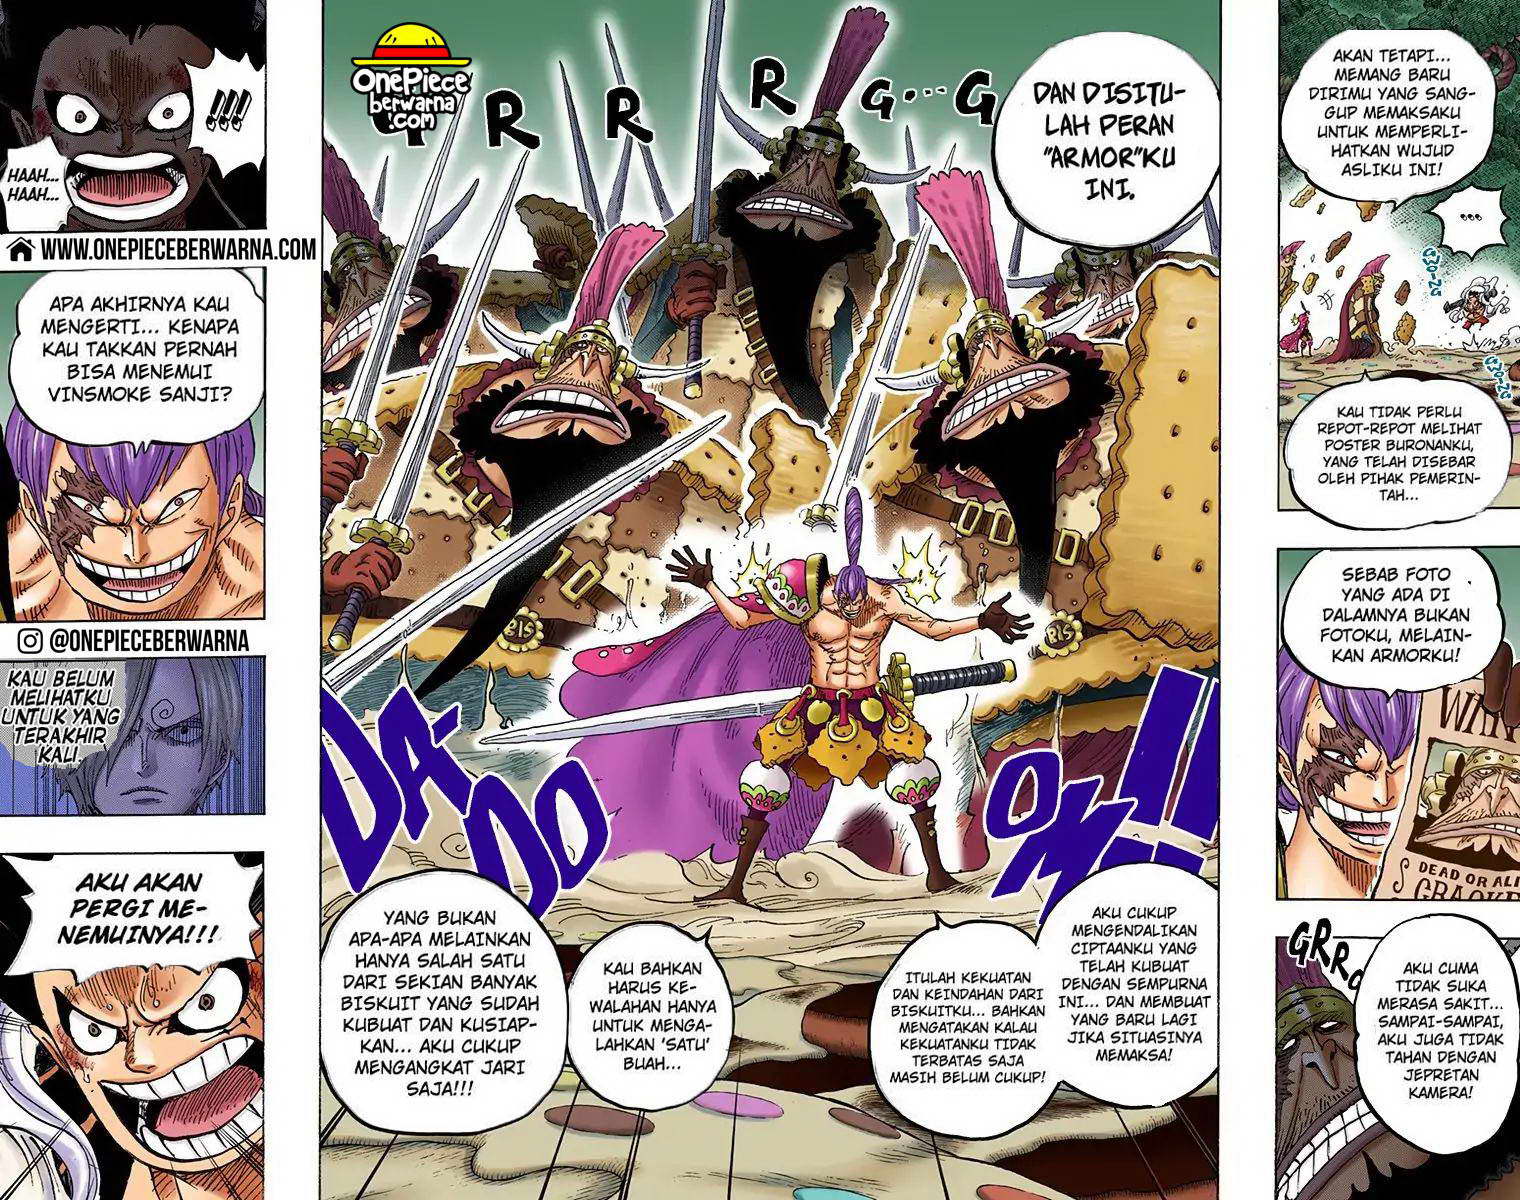 One Piece Berwarna Chapter 816